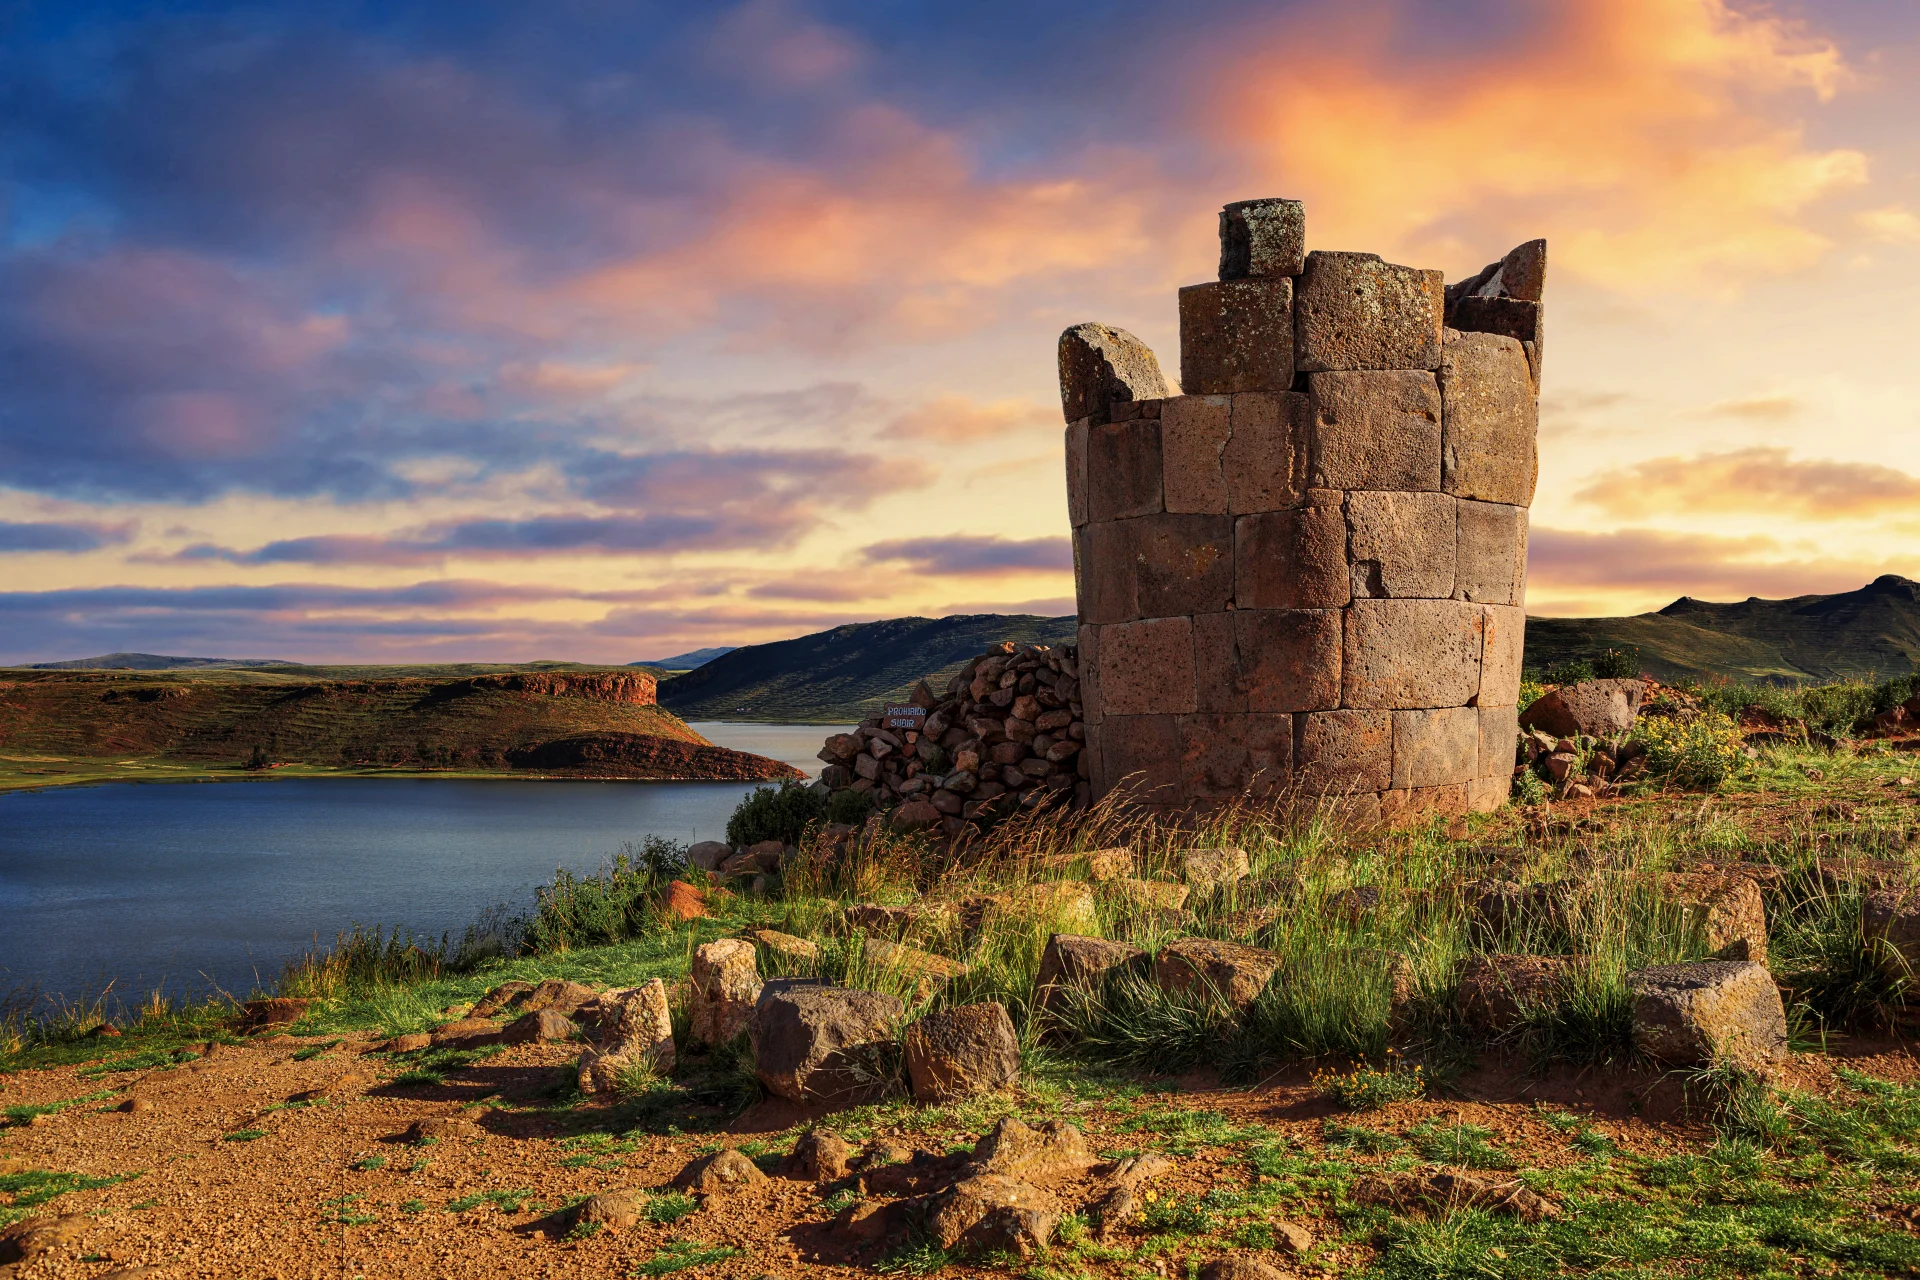 Titicacasjøen, oldtidshistorie og høydepunkter i Sør-Amerika